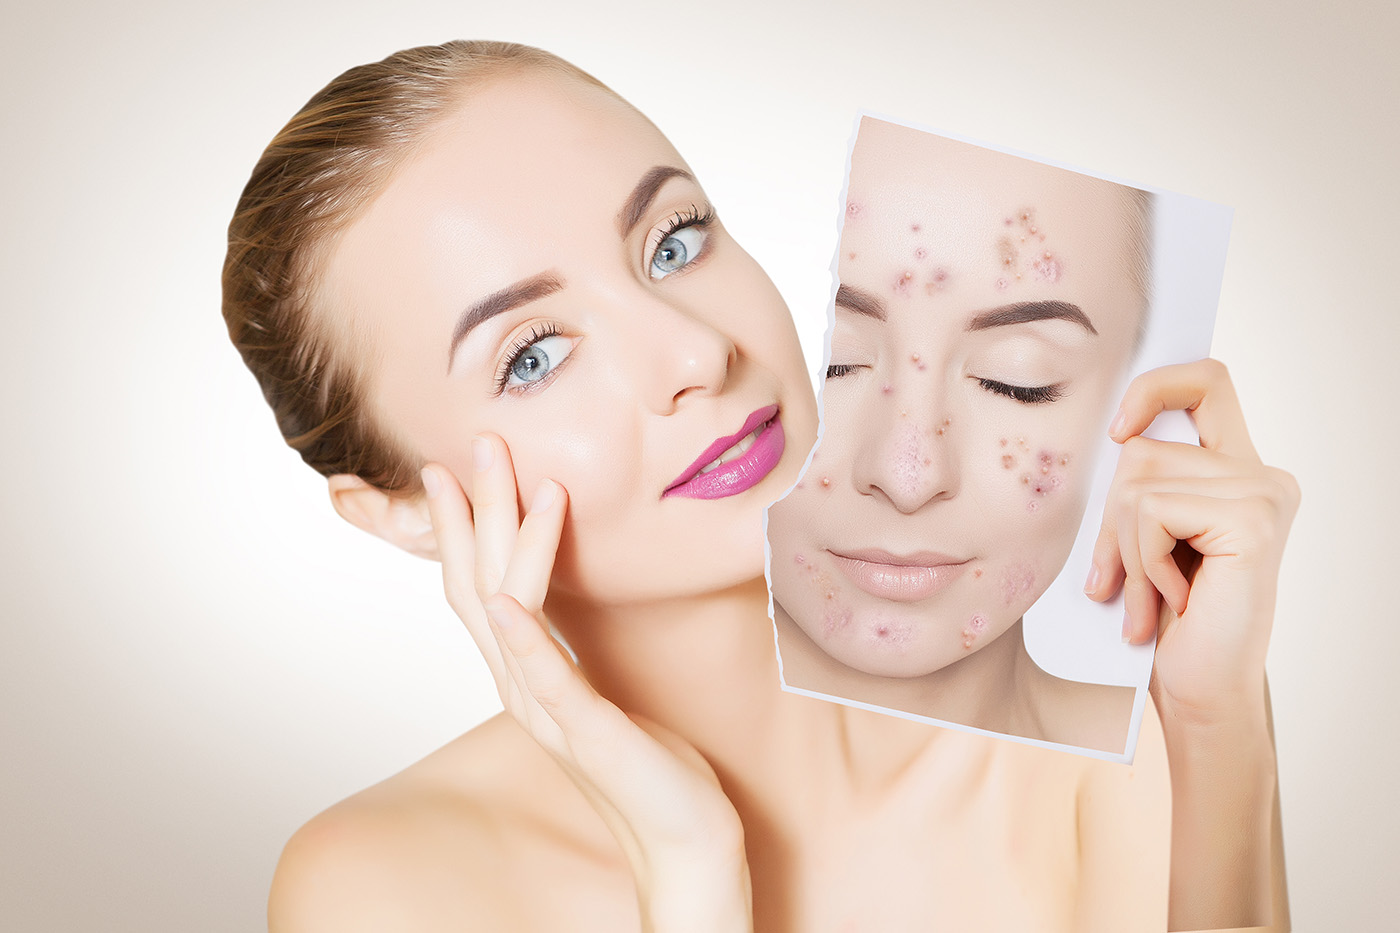 INGRIJIREA TENULUI - Sfaturi direct de la Experta in Tratamentele Faciale, Larisa | Ezenpur Blog